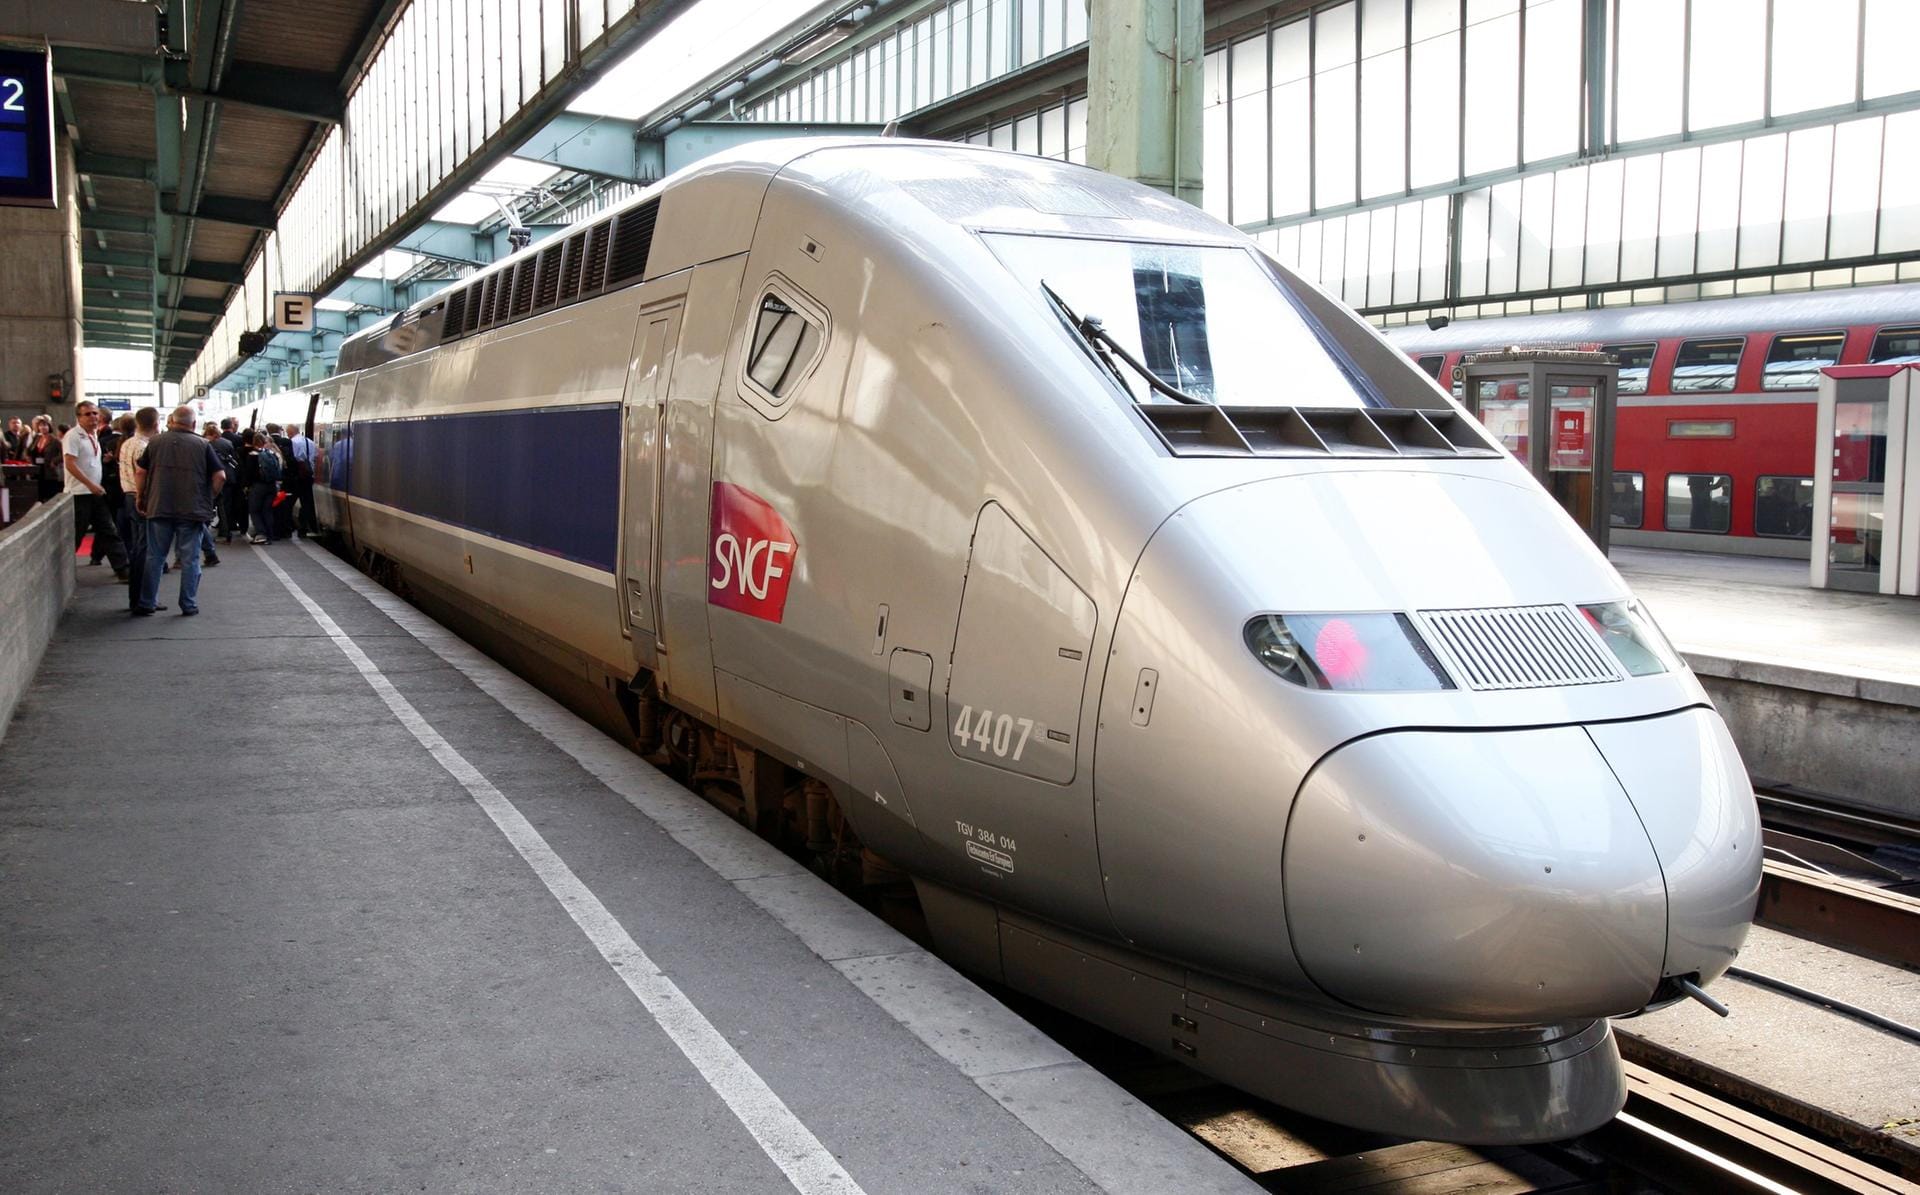 Französischer TGV: 2007 stellte ein dafür präparierter Zug seinen eigenen Rekord aus dem Jahr 1990 ein. Er erreichte ein Tempo von 574,79 km/h.